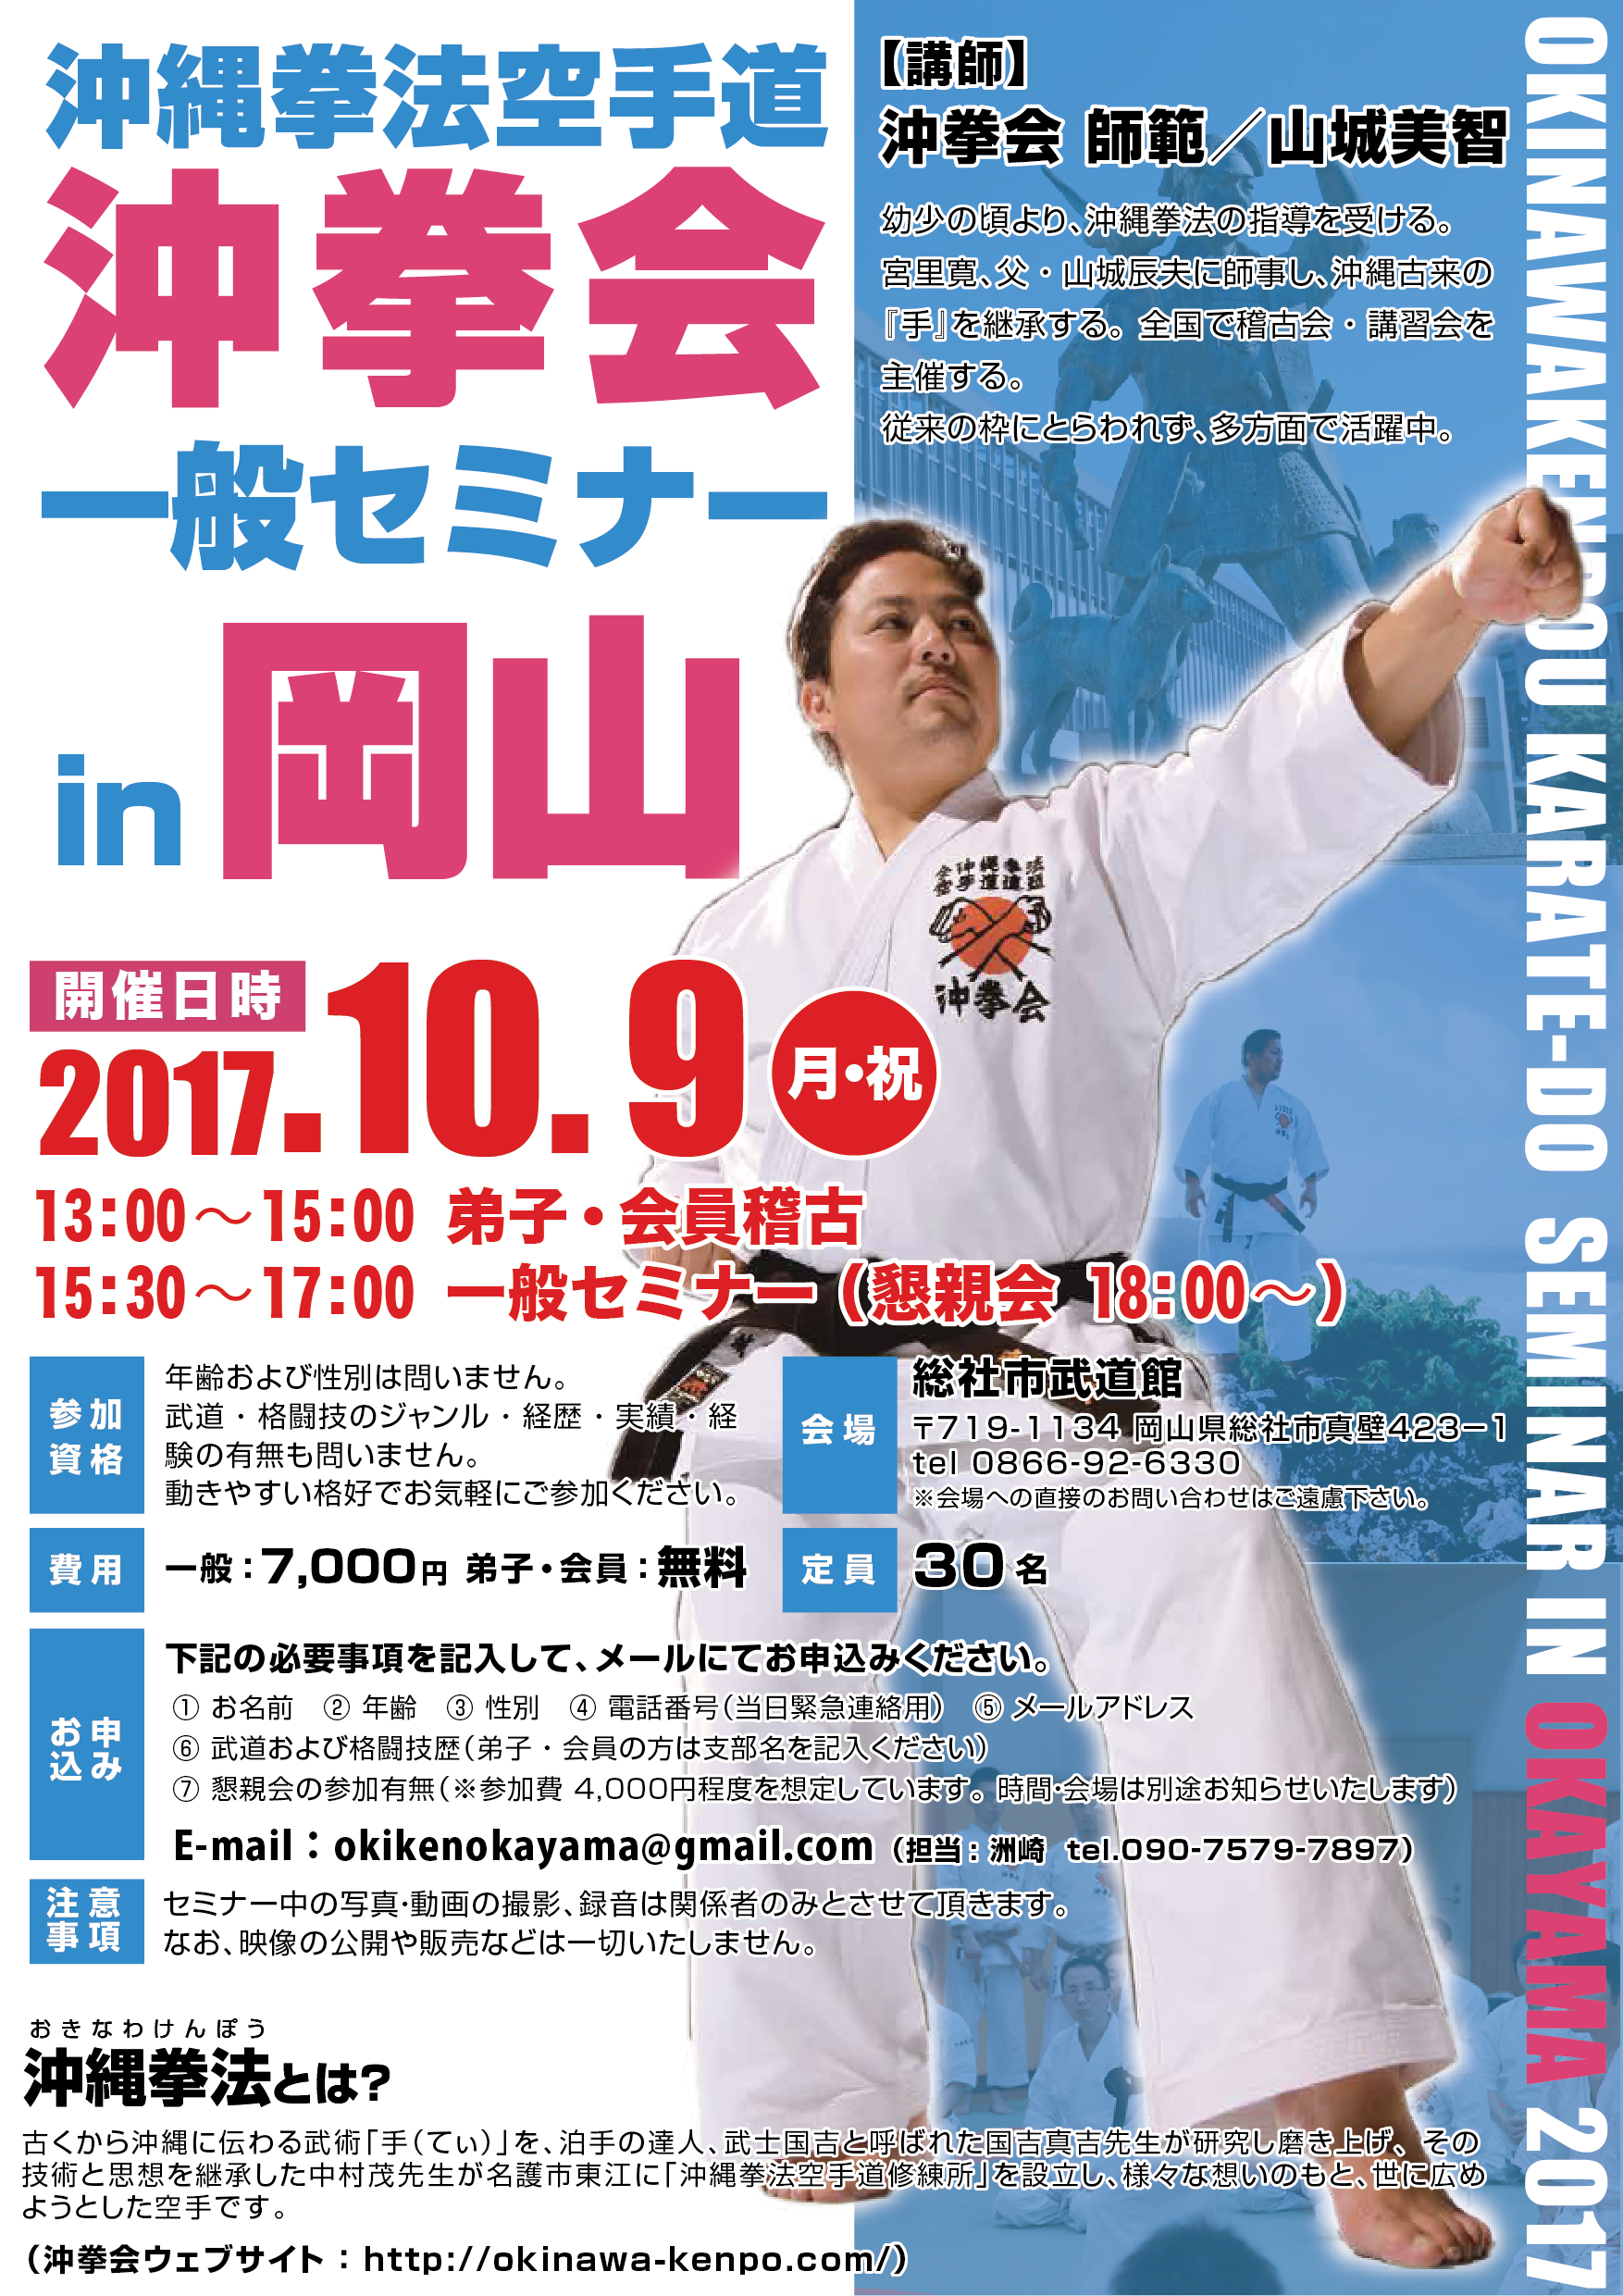 10月15日(日) 沖縄拳法 岡山セミナー